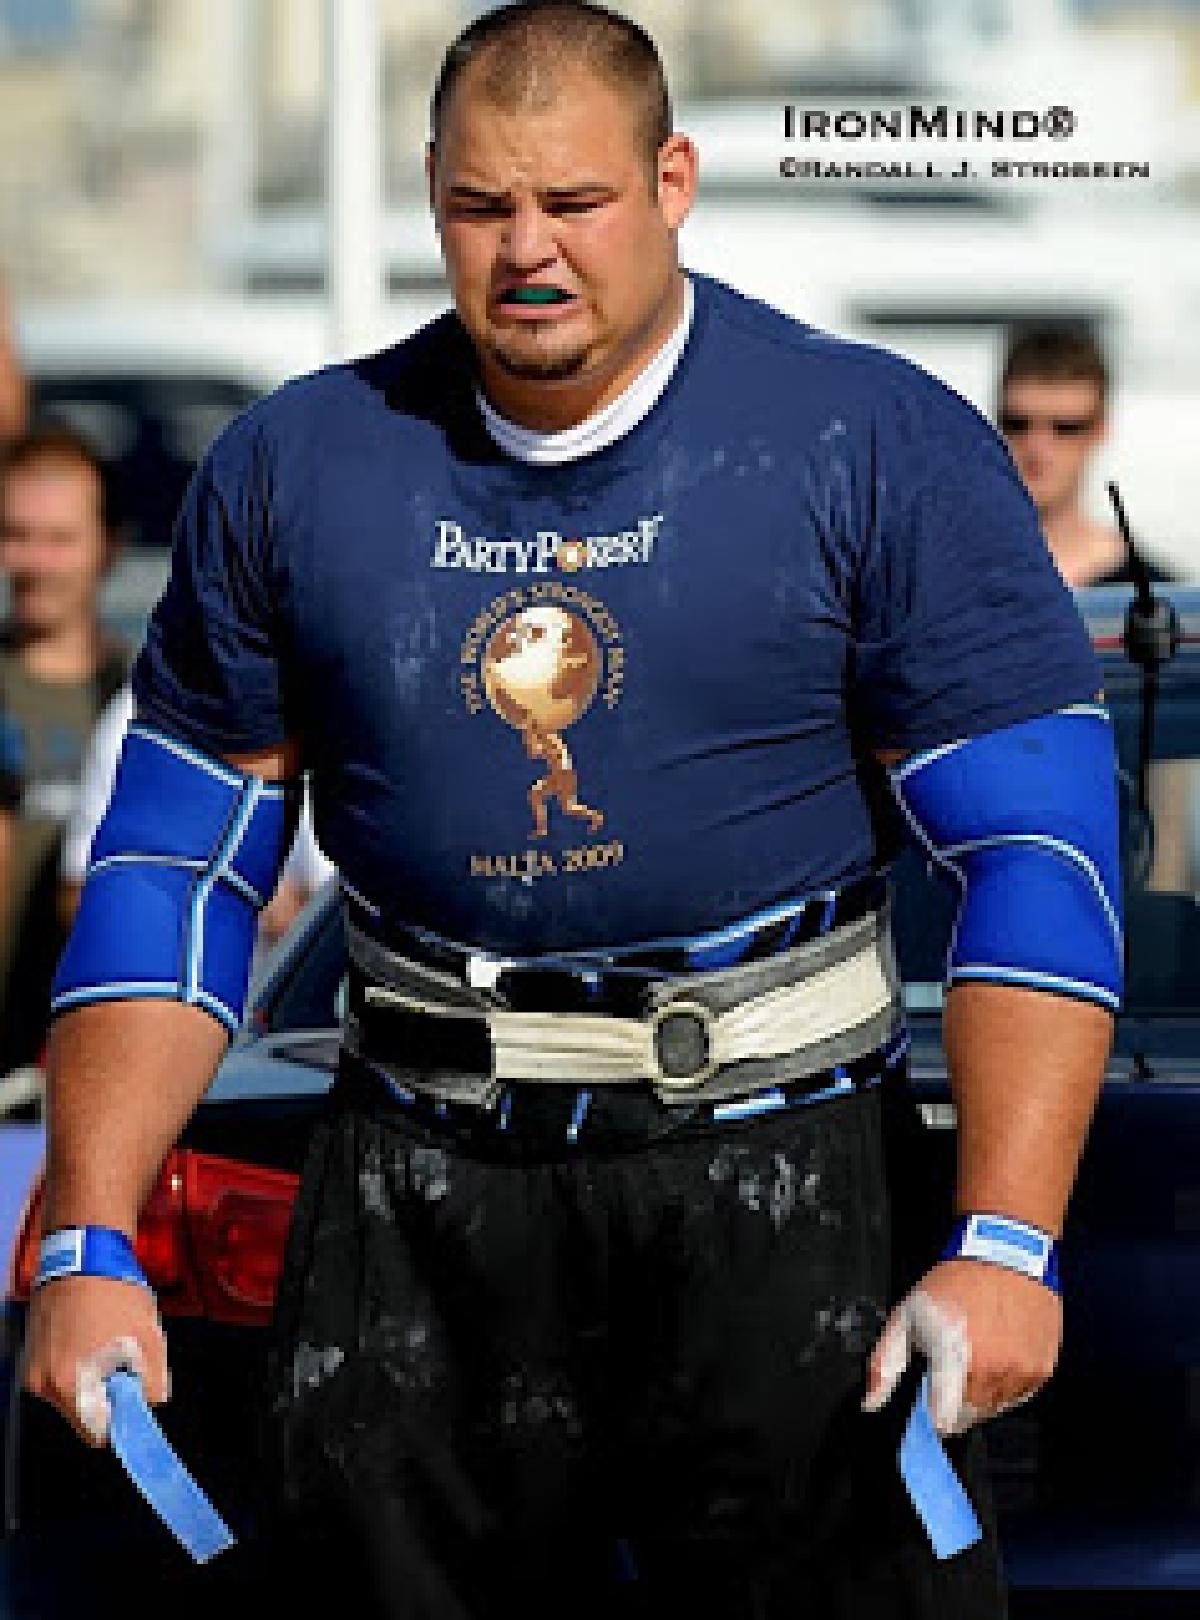 Δείτε πόσα κιλά σηκώνει ο πιο δυνατός άντρας στον κόσμο για το 2013